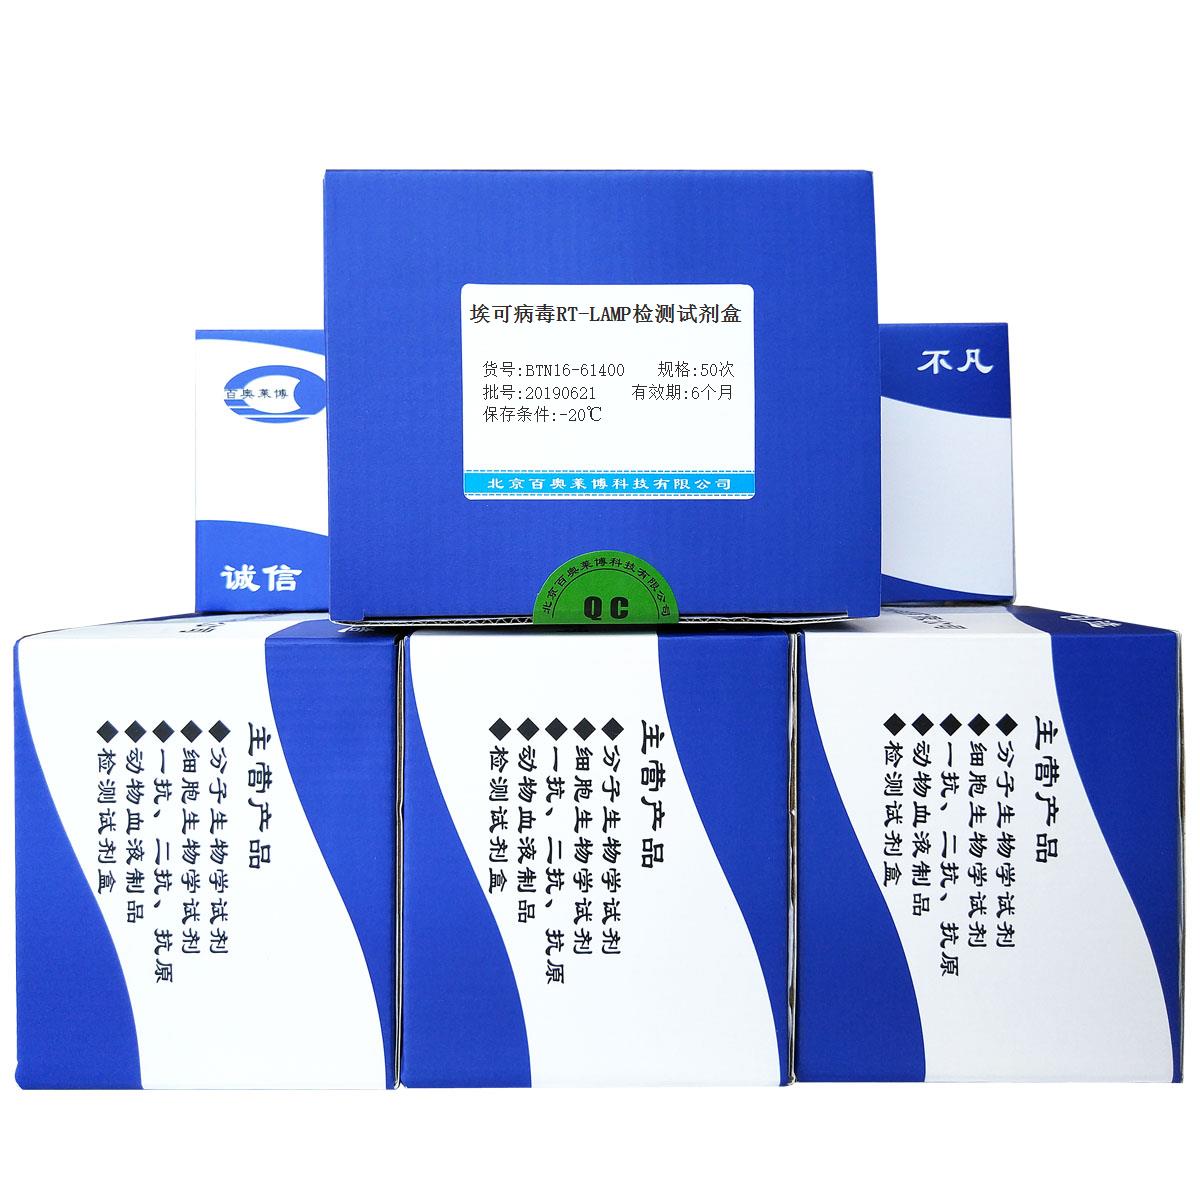 埃可病毒RT-LAMP检测试剂盒北京品牌